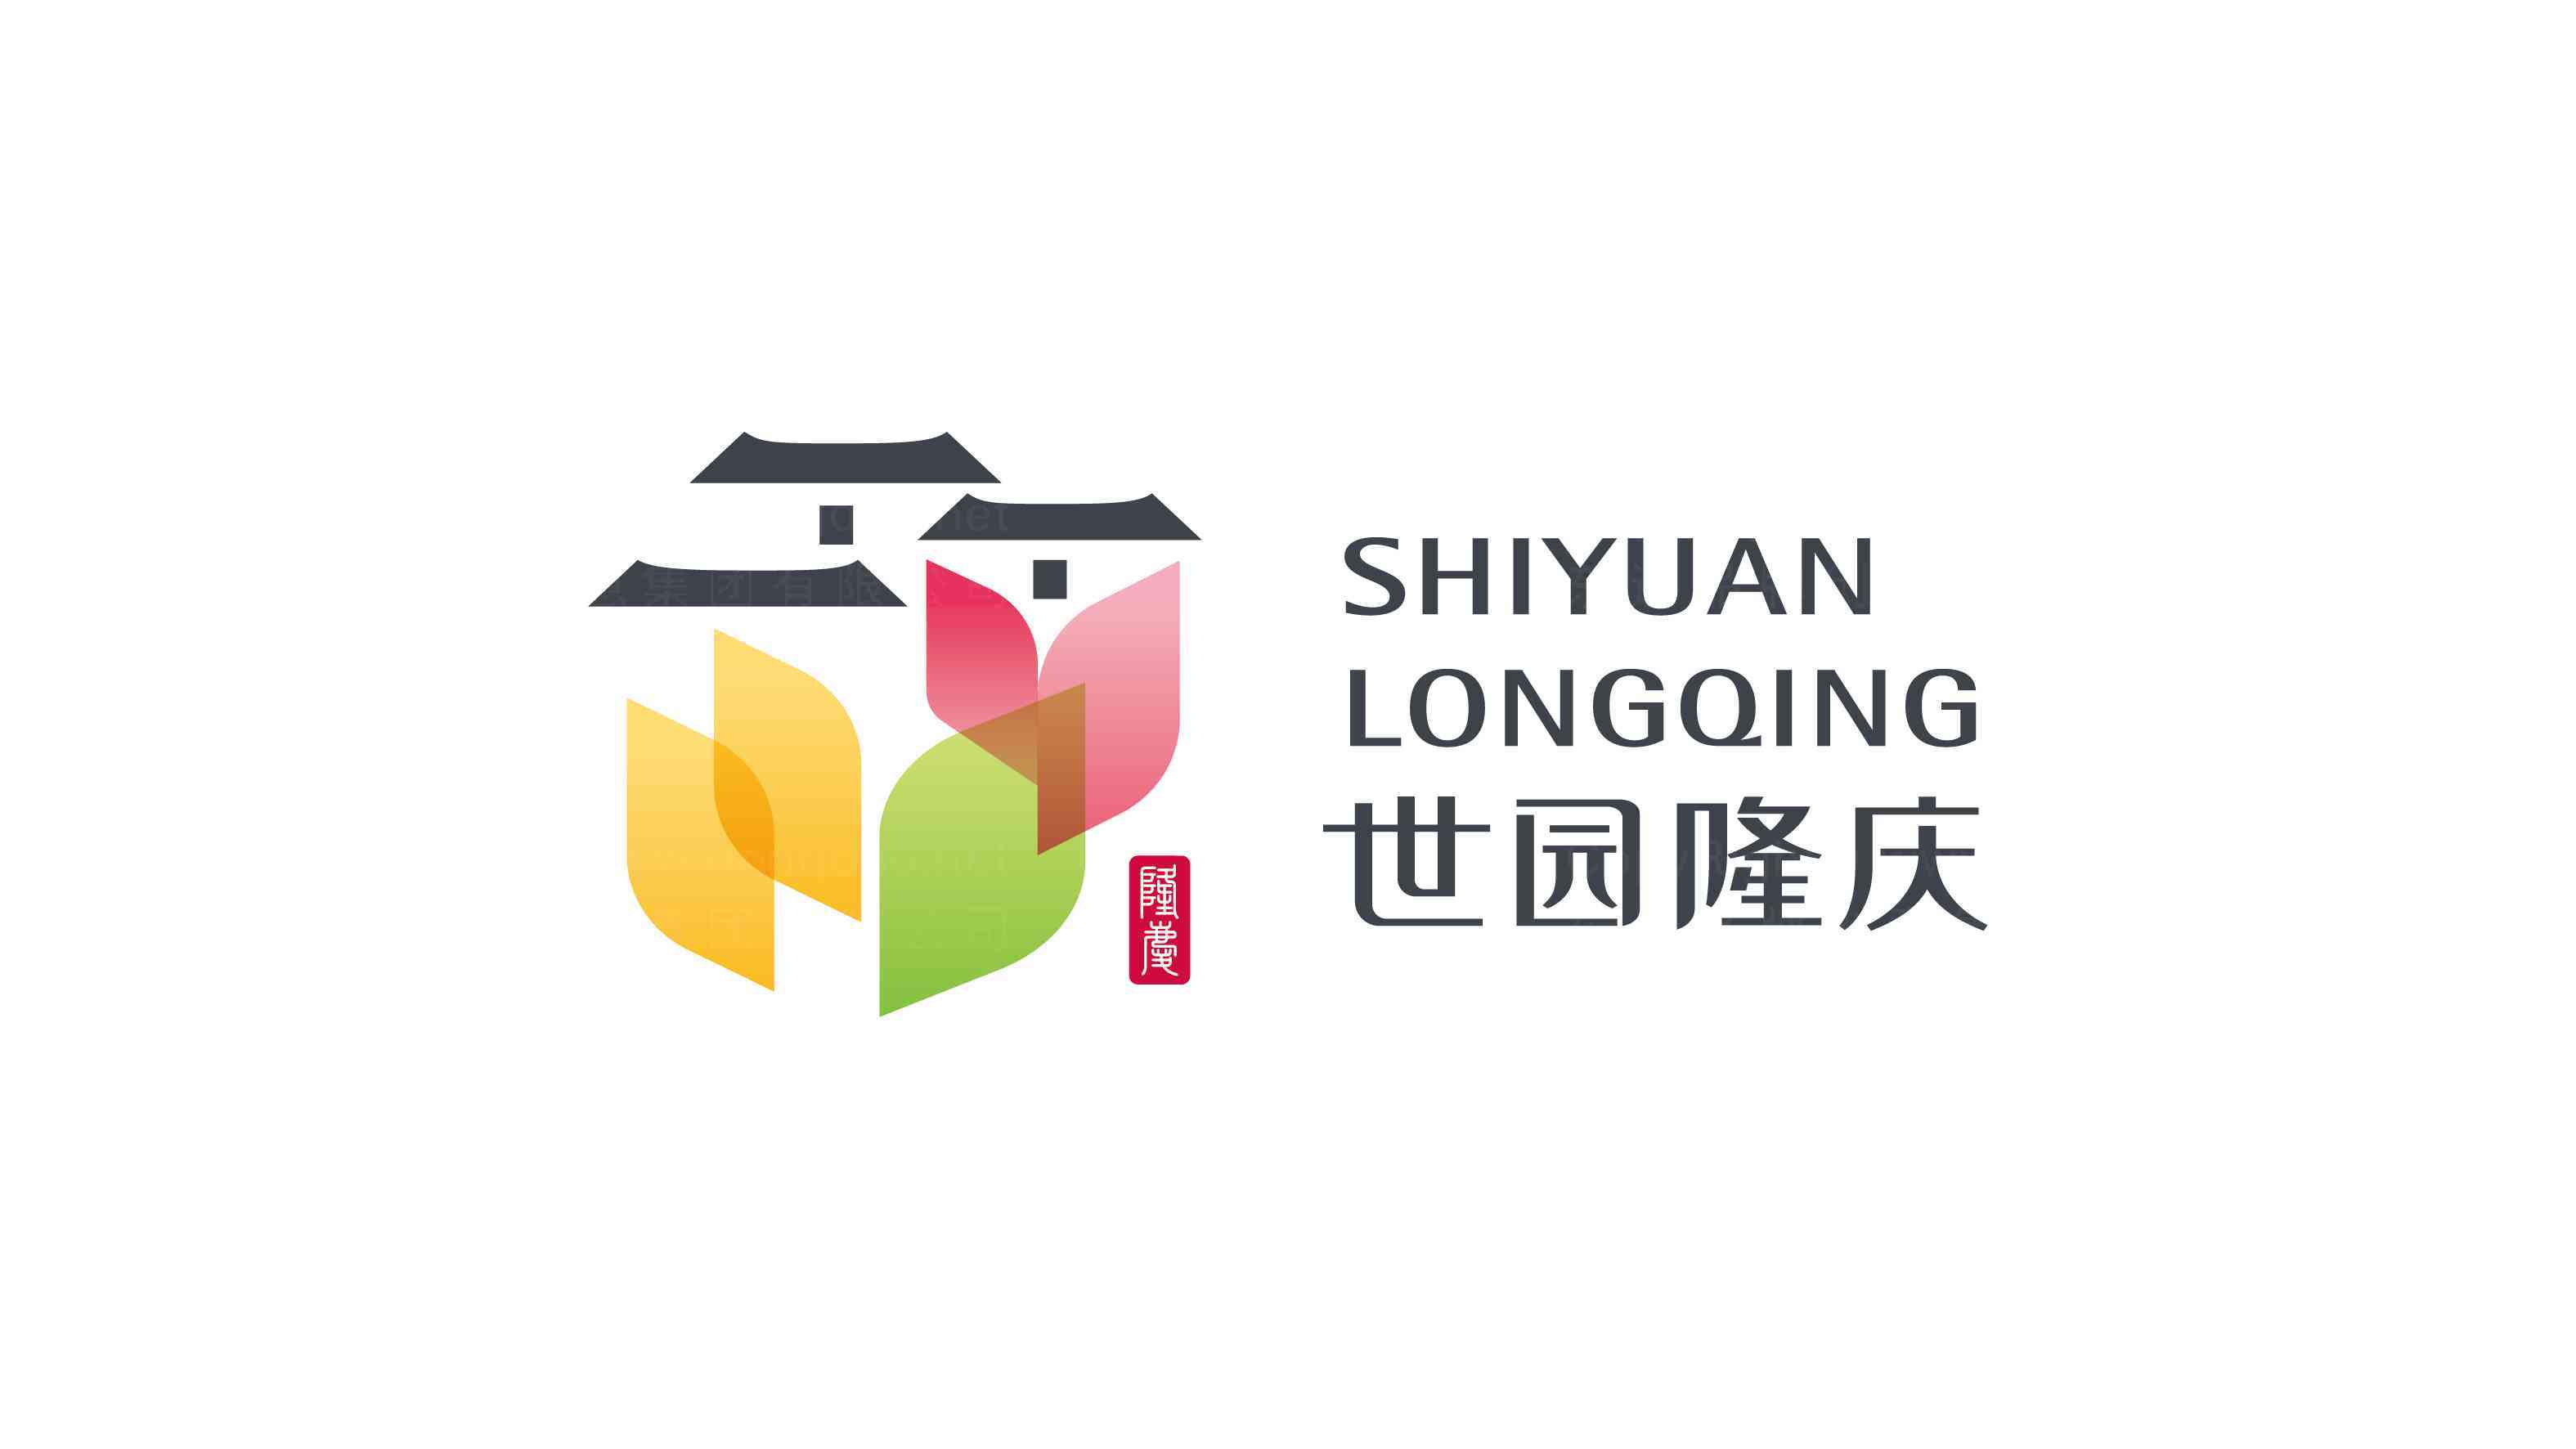 世园隆庆logo设计图片素材